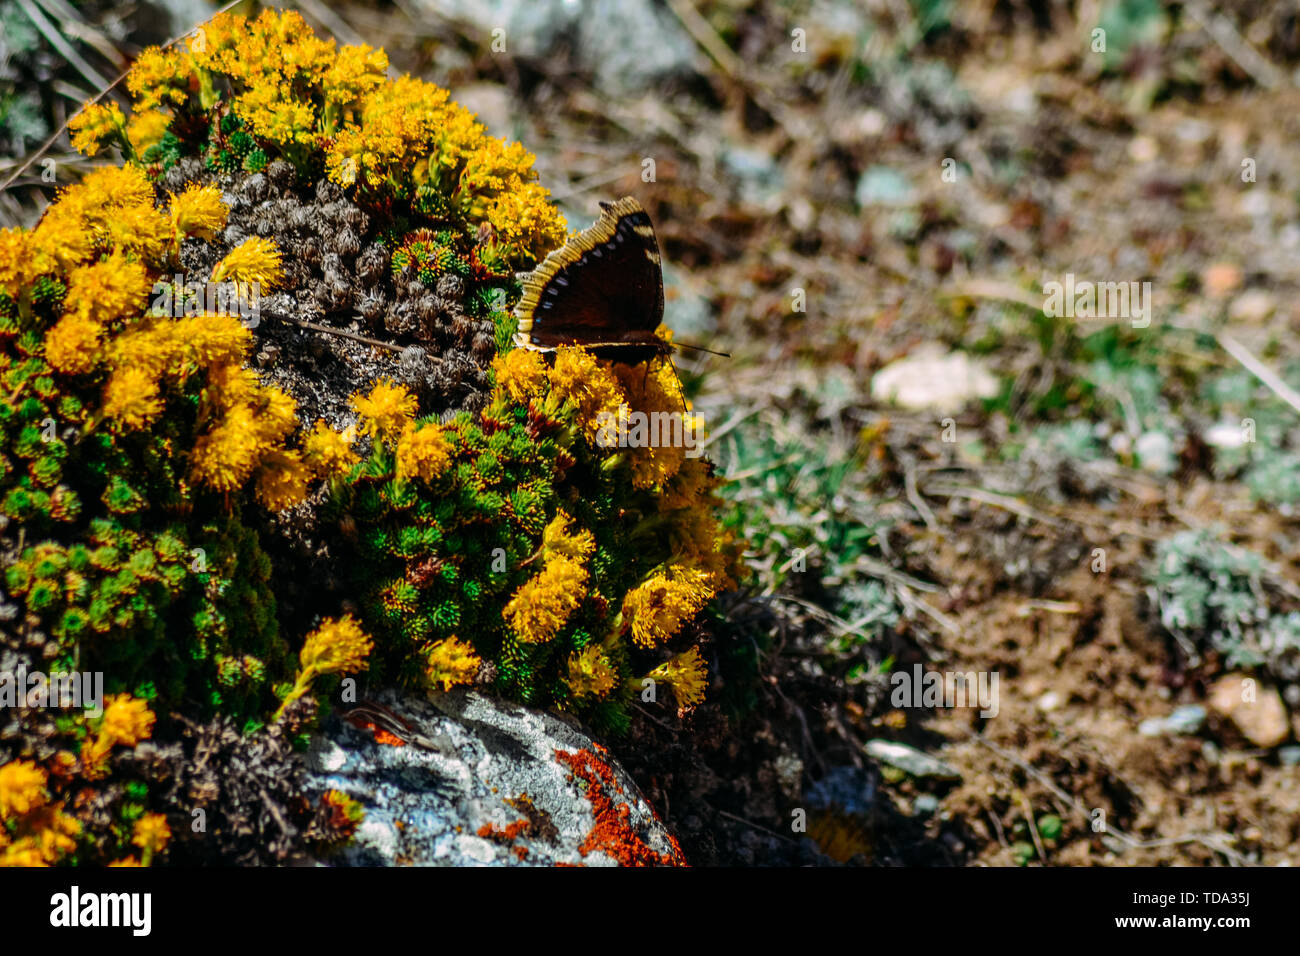 Foto di una farfalla sui fiori in una zona montuosa su una roccia Foto Stock